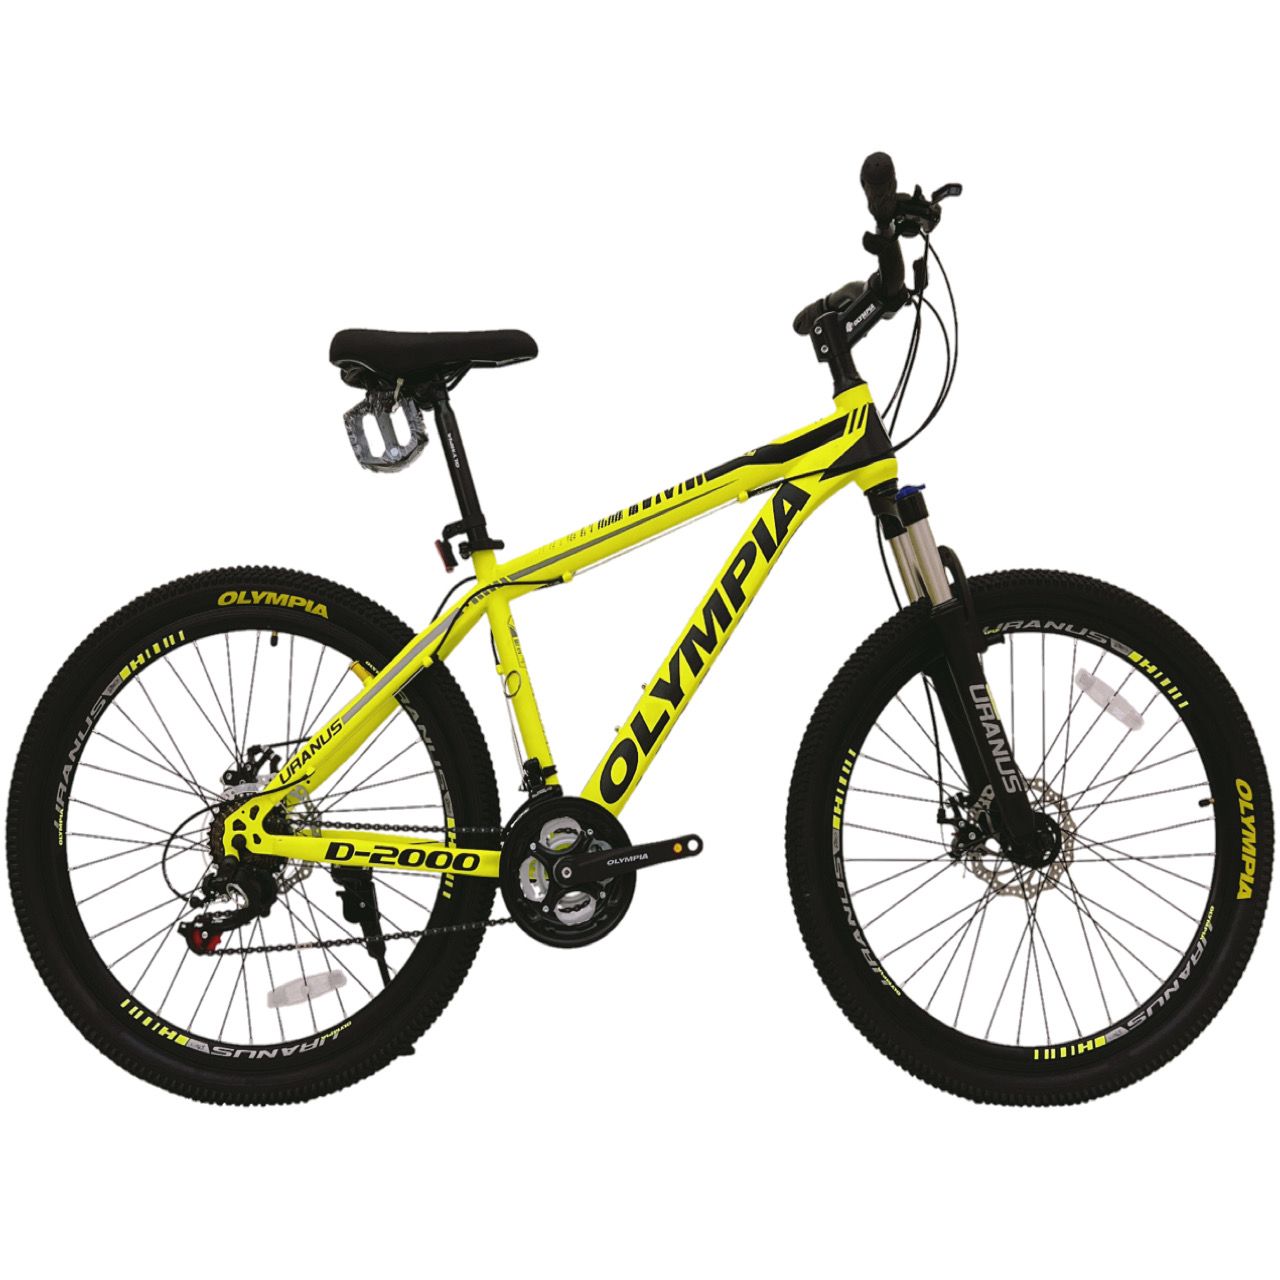 نکته خرید - قیمت روز دوچرخه کوهستان المپیا مدل NEW GELLY کد دیسکی سایز 26 خرید